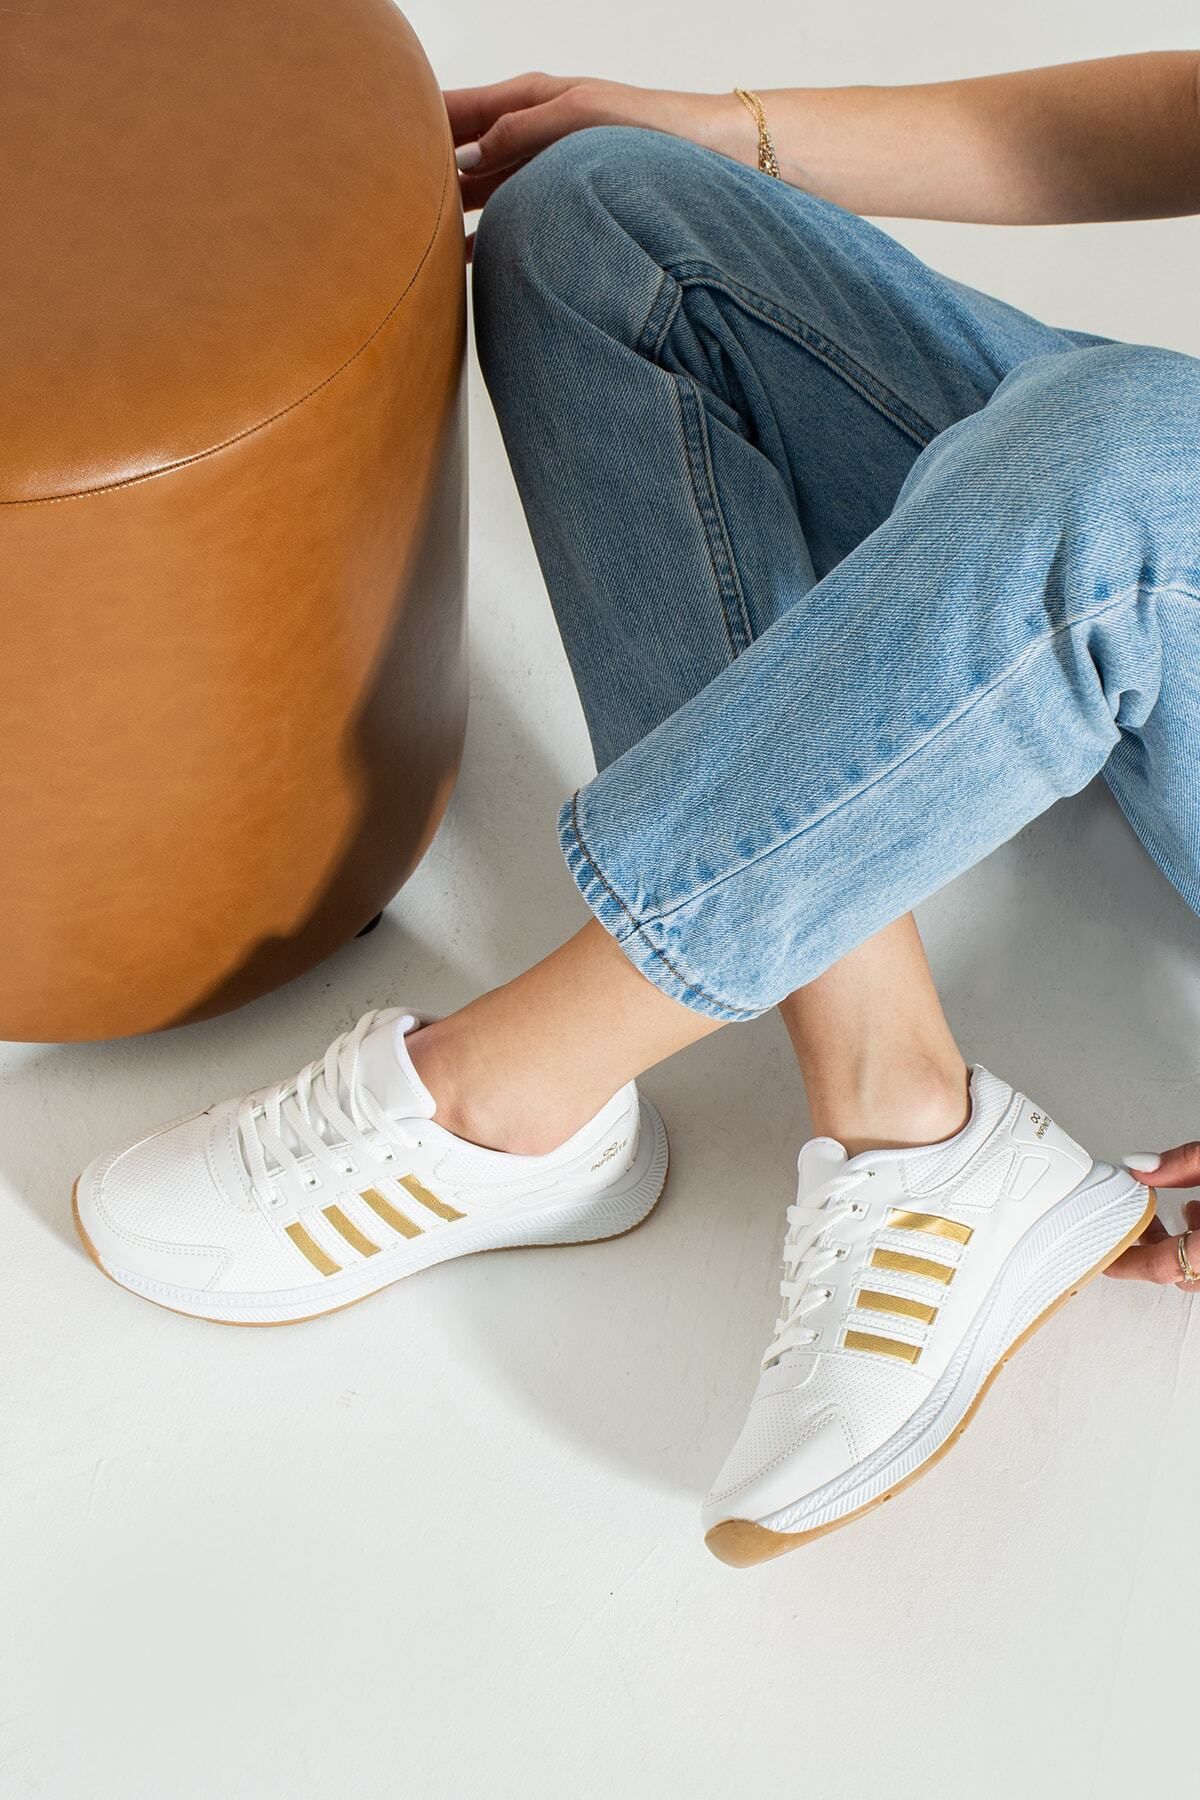 İnan Ayakkabı Insports Beyaz Gold Günlük Sneakers 3 Cm Taban